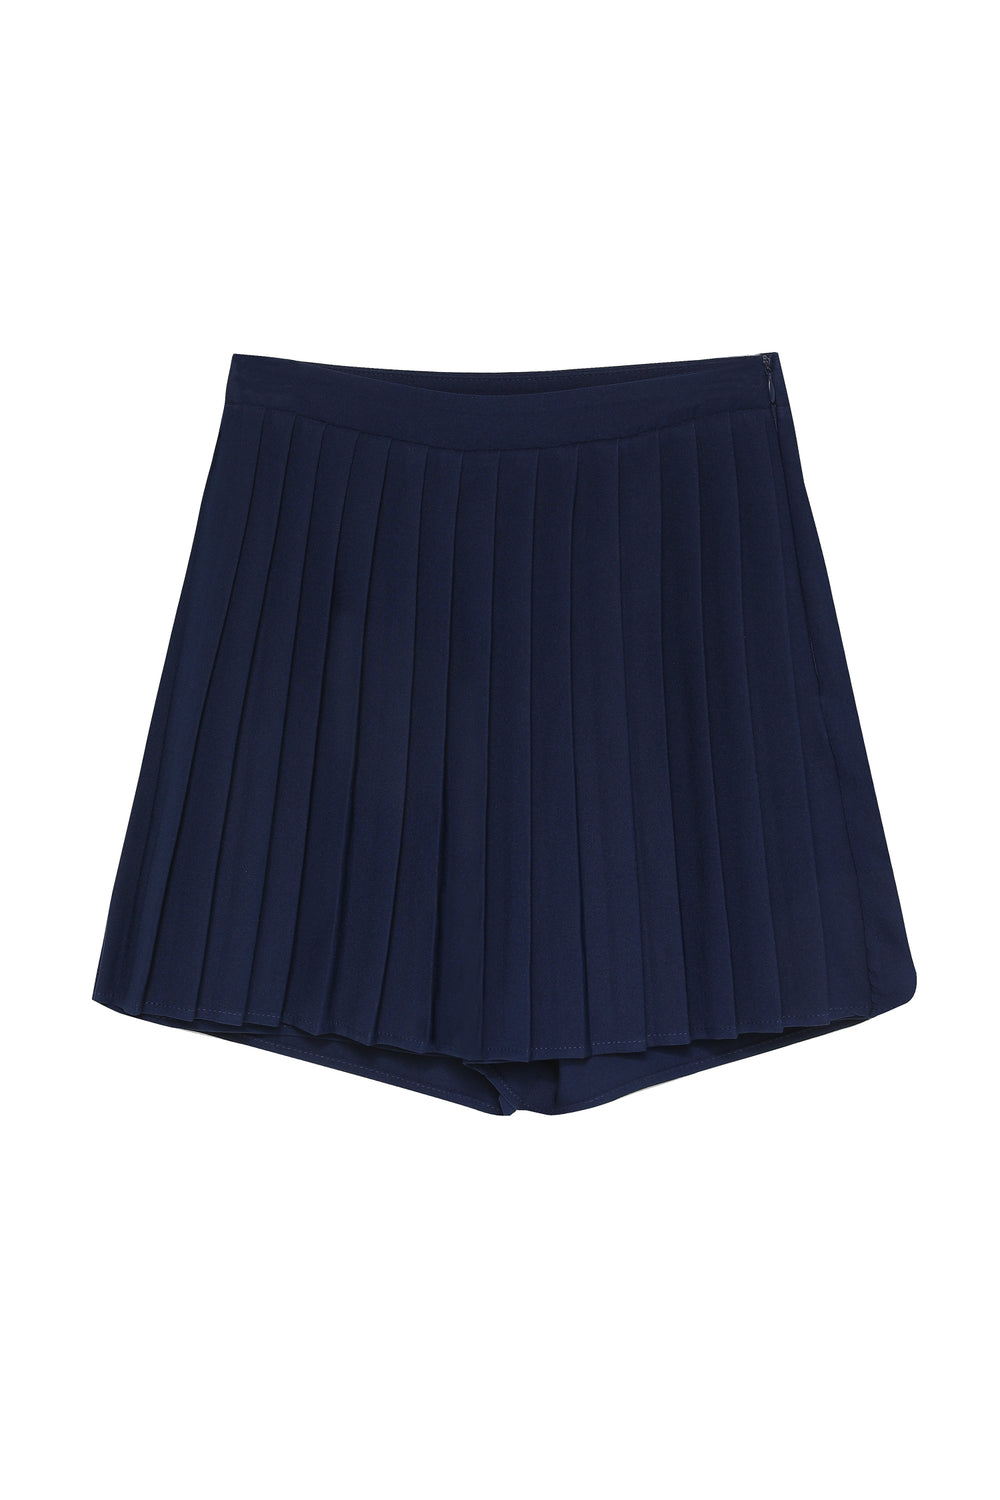 Pleated Short Skirt Navy Blue